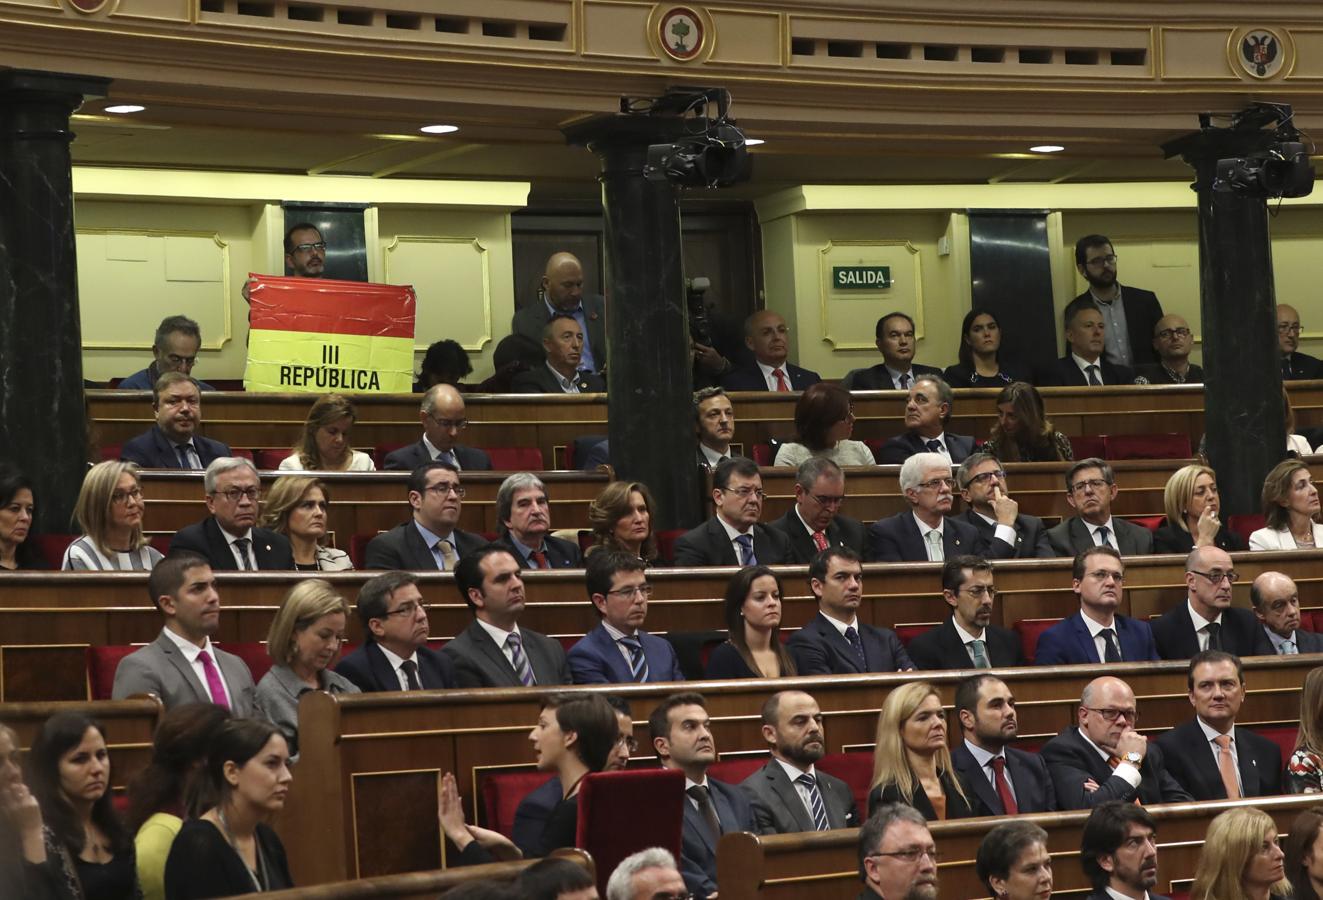 El senador navarro de IU, Iñaki Bernal, ha mantenido desplegada una bandera republicana desde su escaño en lo alto del hemiciclo del Congreso durante buena parte del discurso del Rey